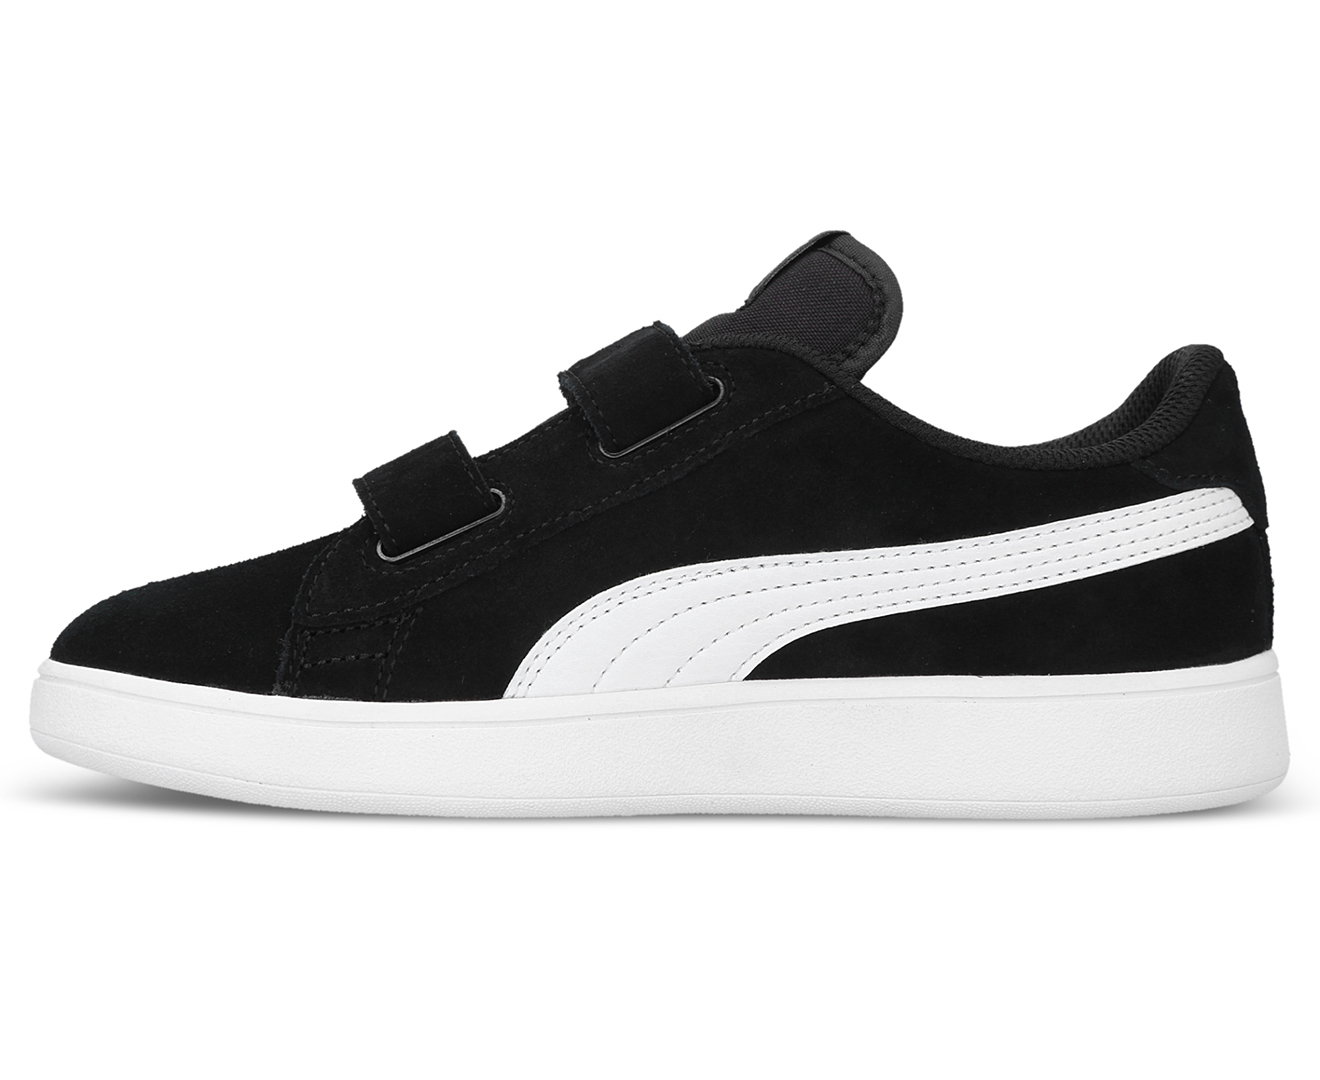 Puma Boys' Smash Suede V2 SD V Sneakers - Black/White | Catch.co.nz